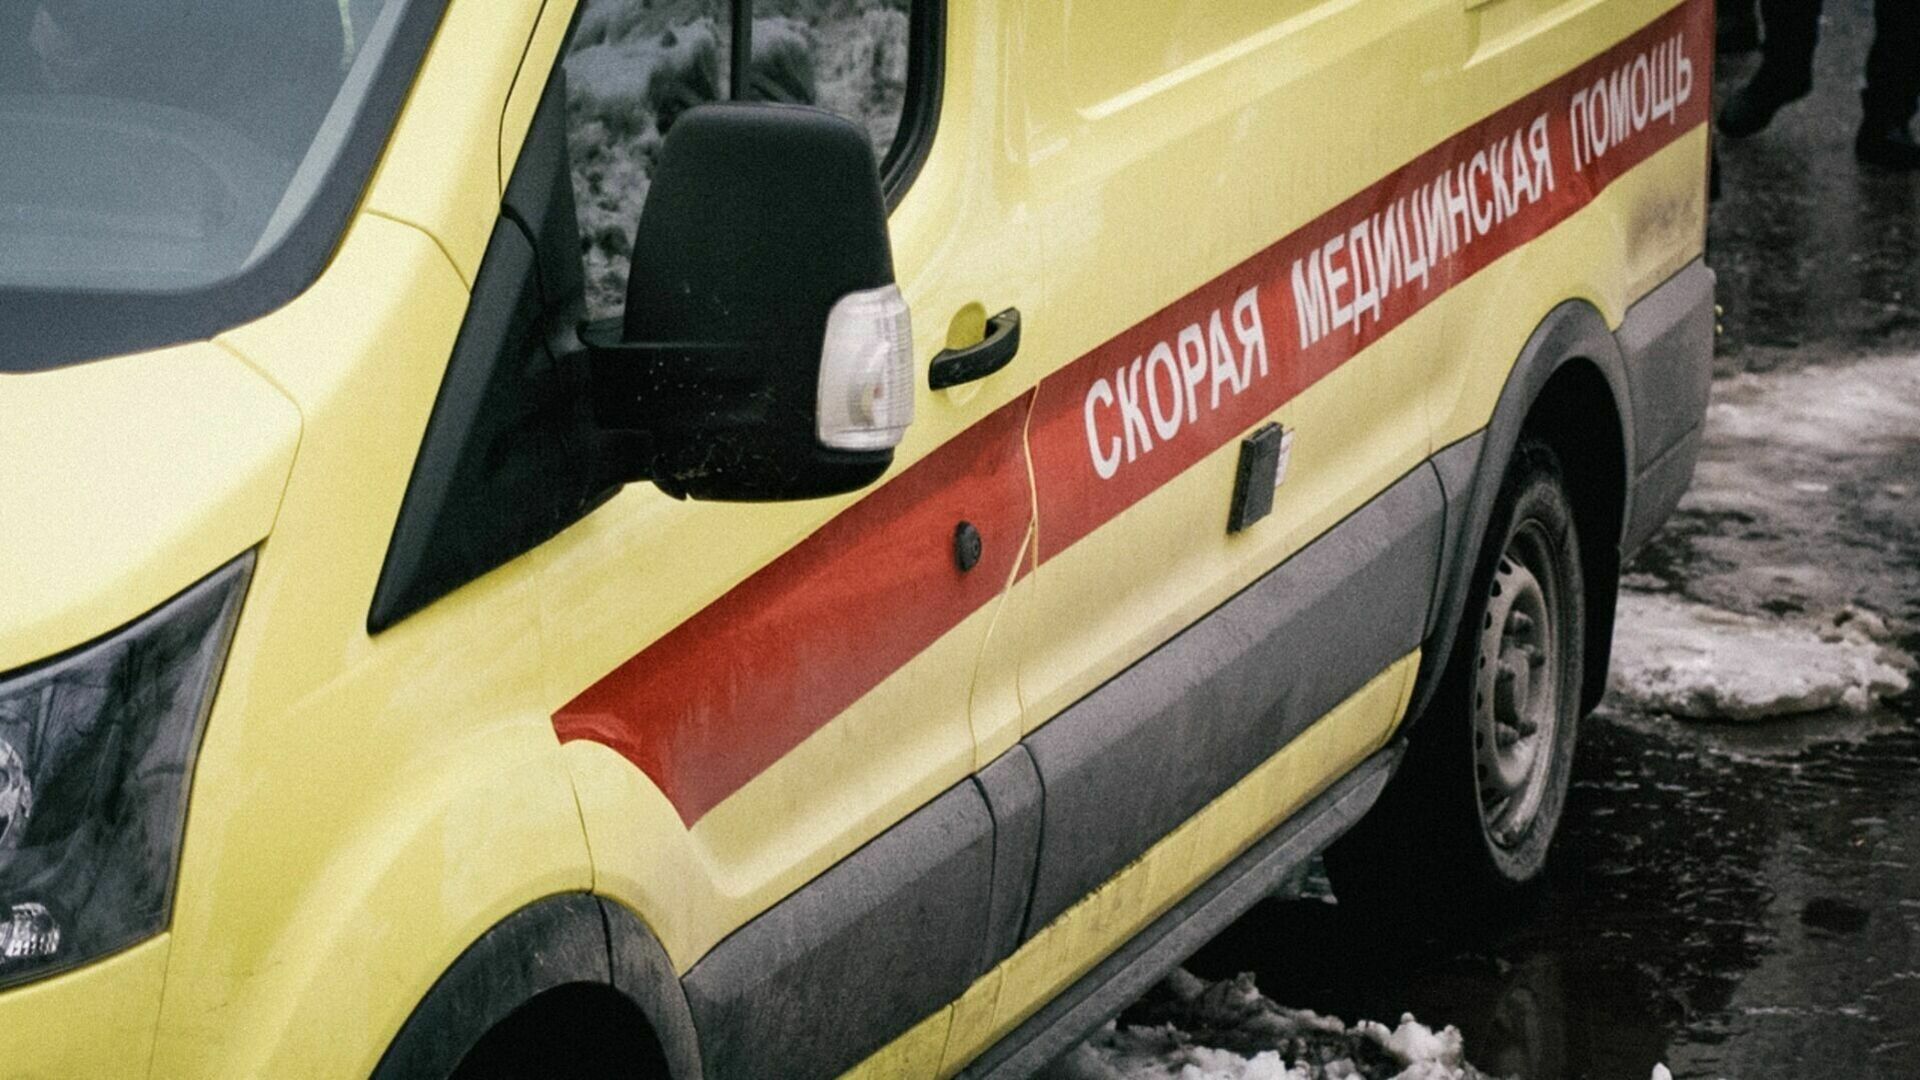 Отморозили ноги: убежавшие на рыбалку дети попали в больницу под Волгоградом